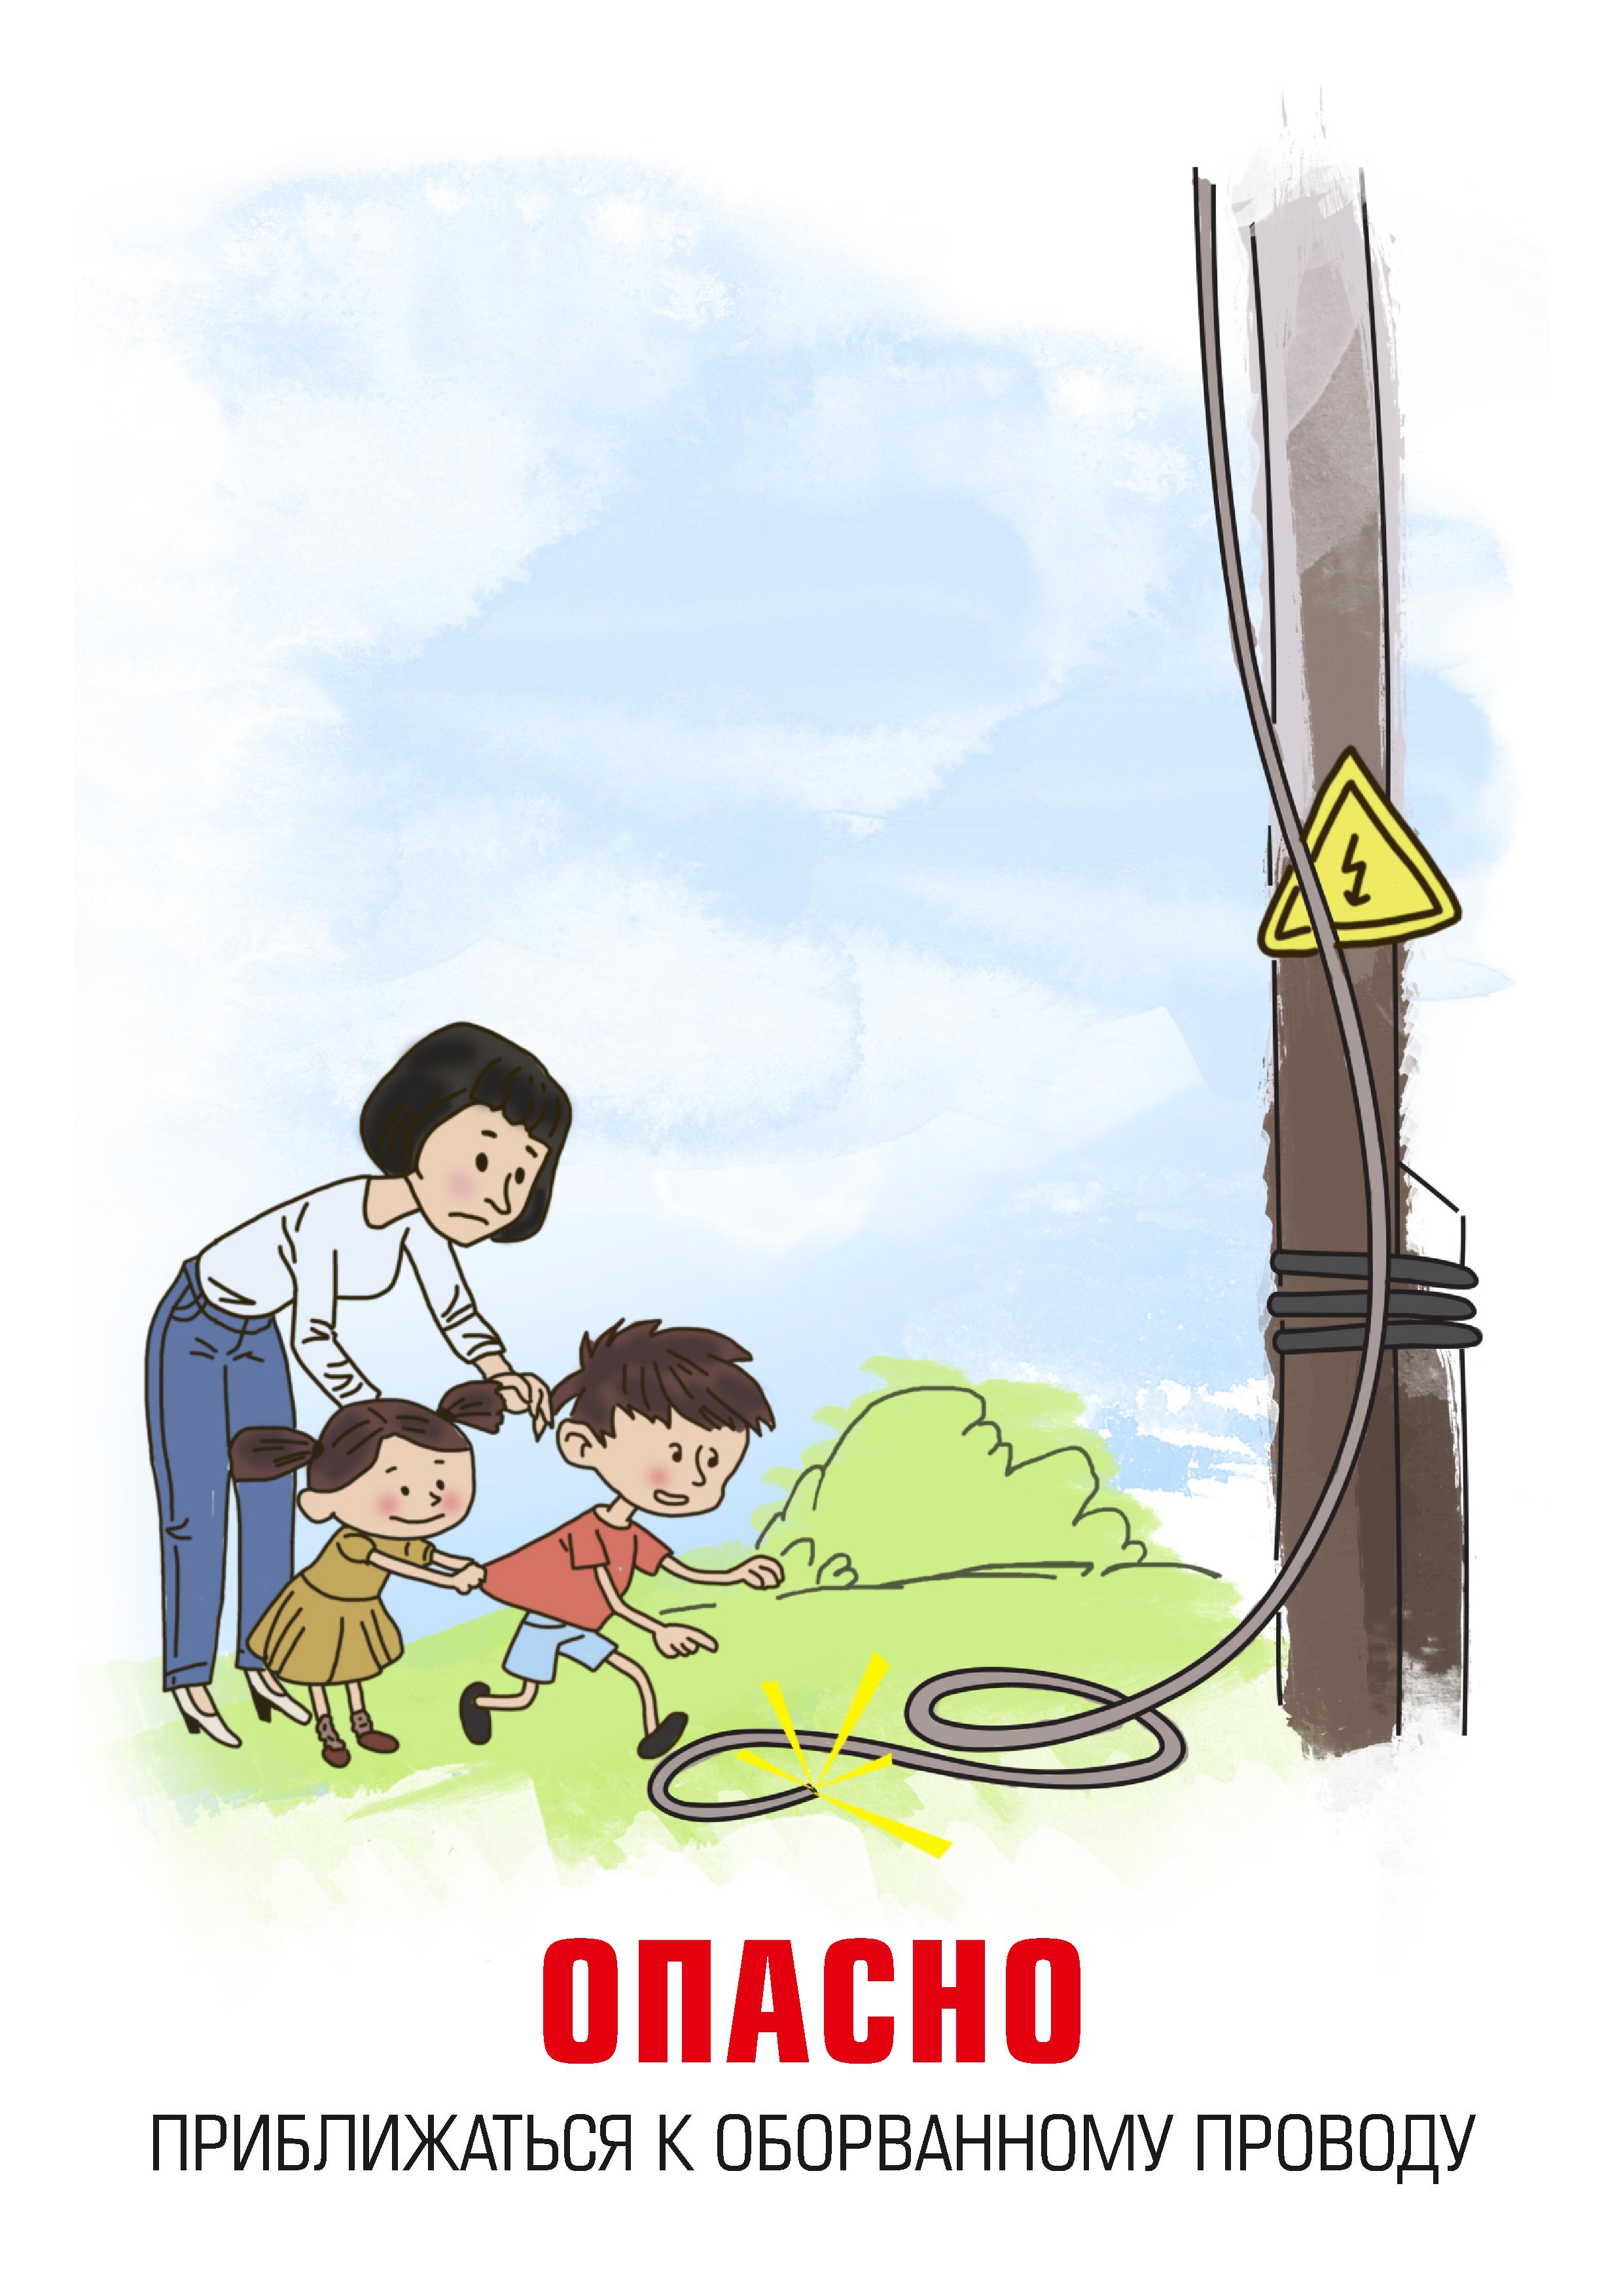 Электробезопасность плакат для детей